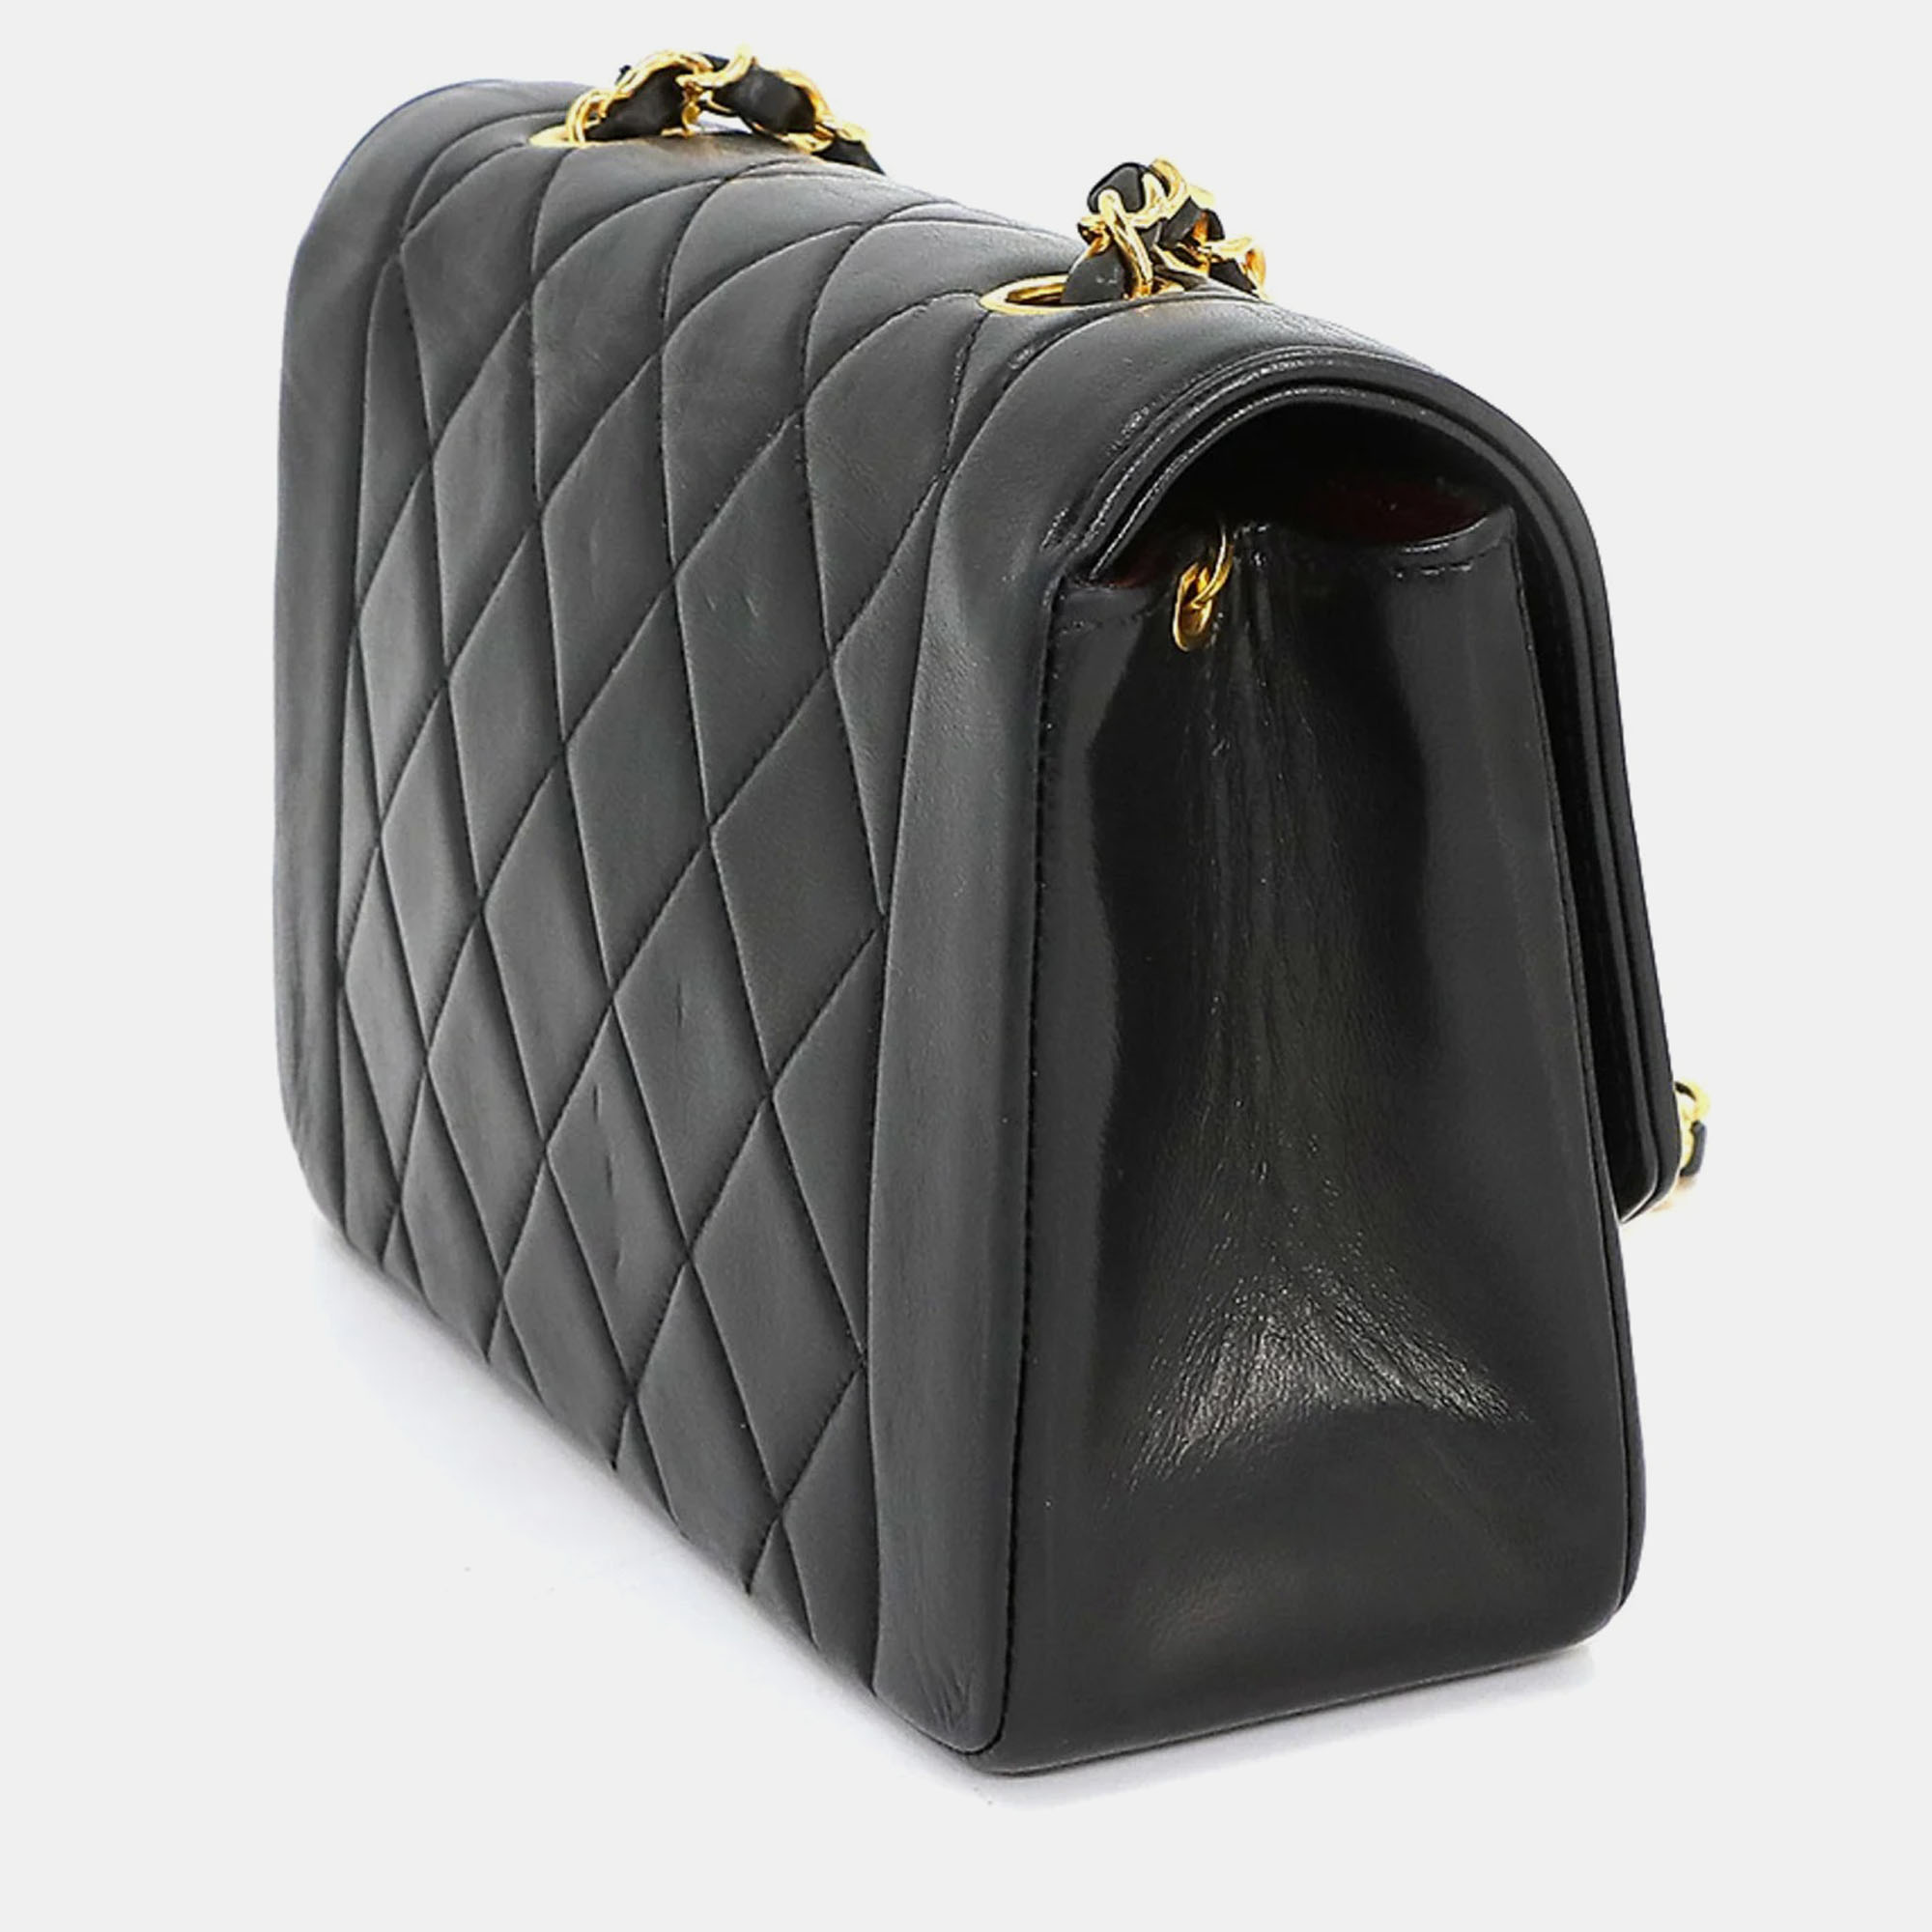 

Chanel Black Lambskin Leather Small Vintage Diana Shoulder Bag